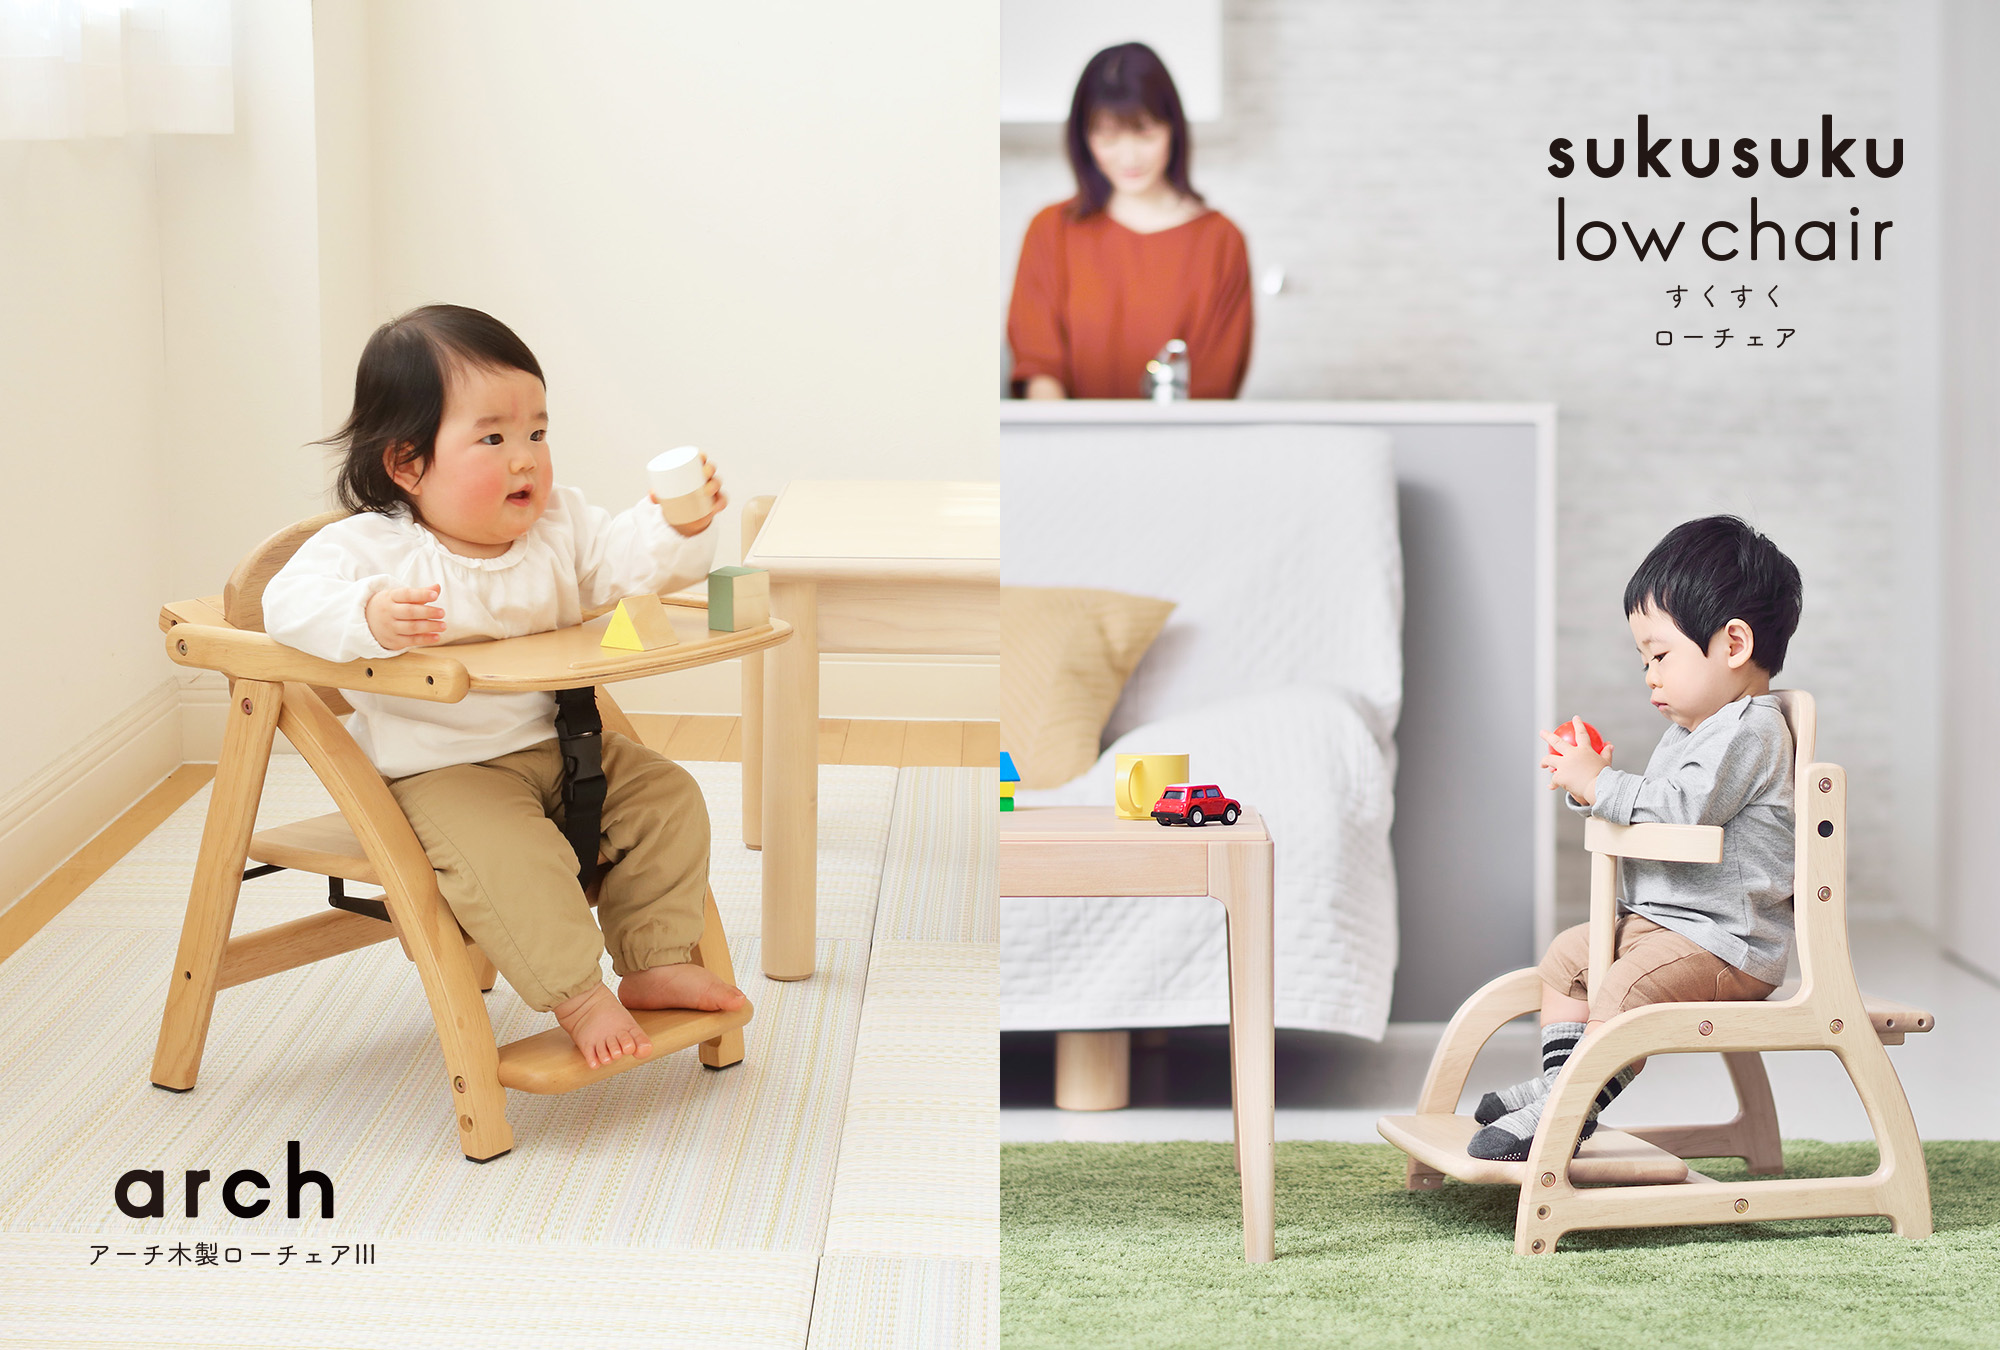 ベビーチェア ハイチェア おしゃれ 木製 赤ちゃん チェア 椅子 イス ベビー キッズ テーブル付き グローアップチェア 新生活